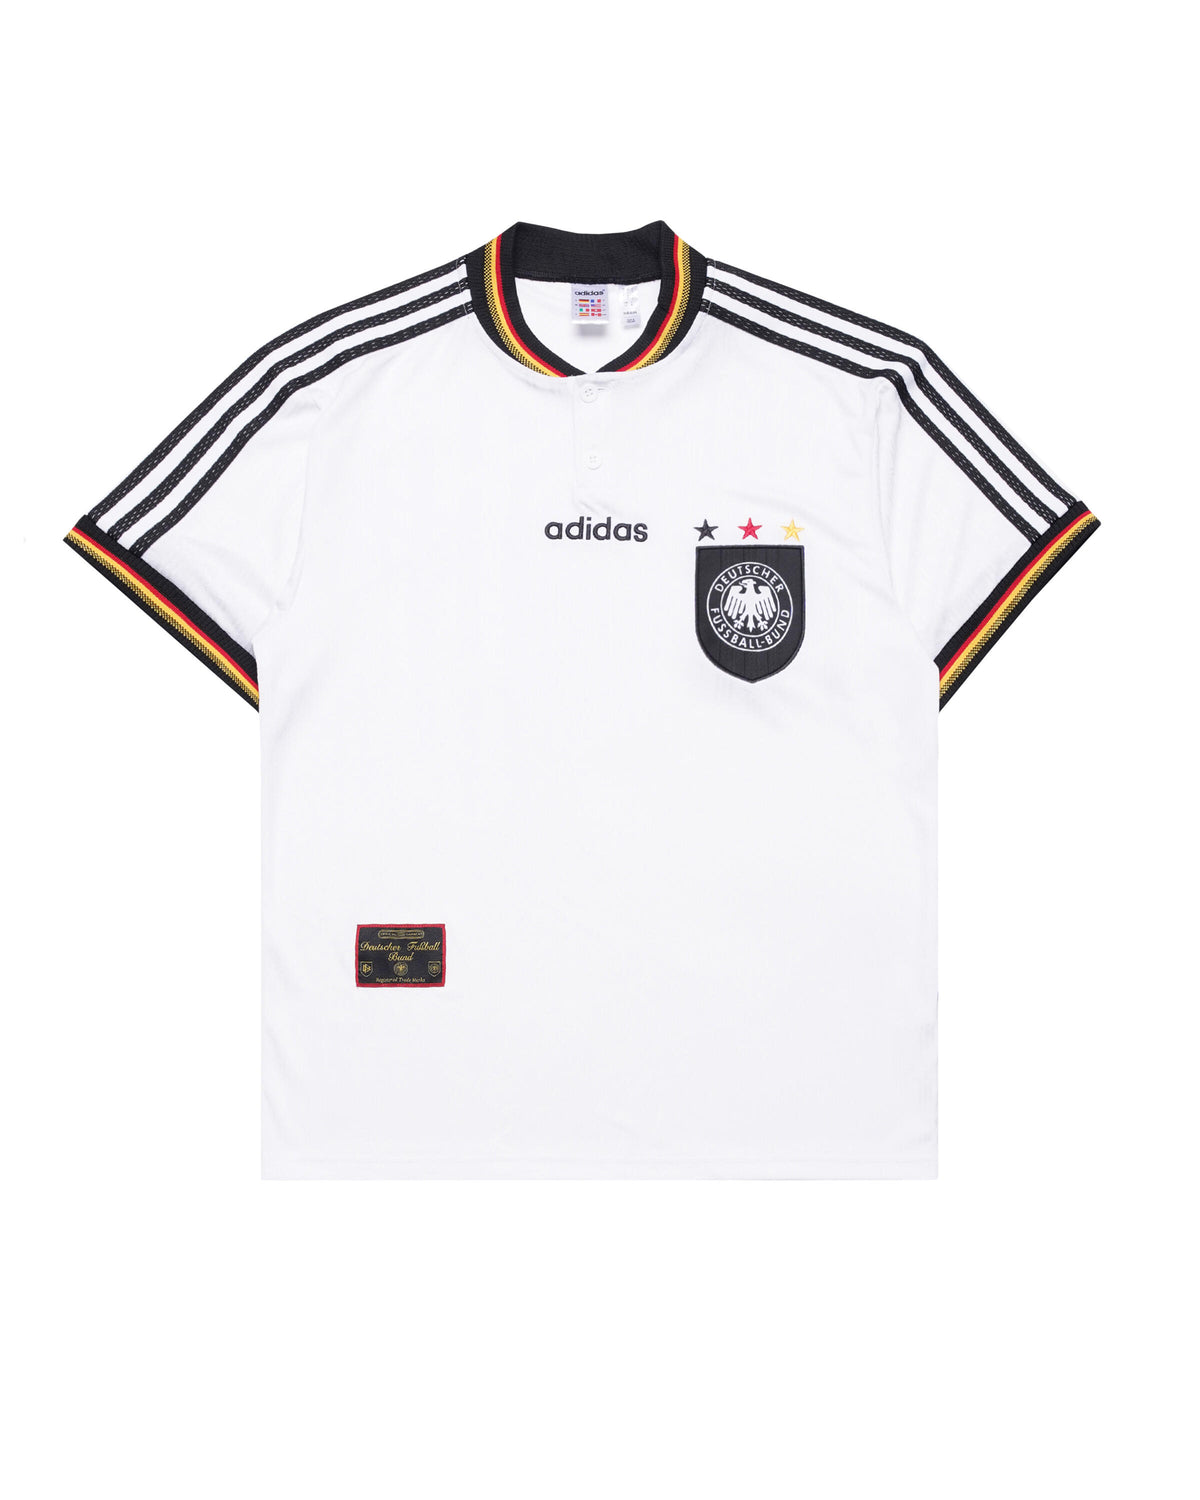 Adidas Originals DFB HOME JERSEY '96